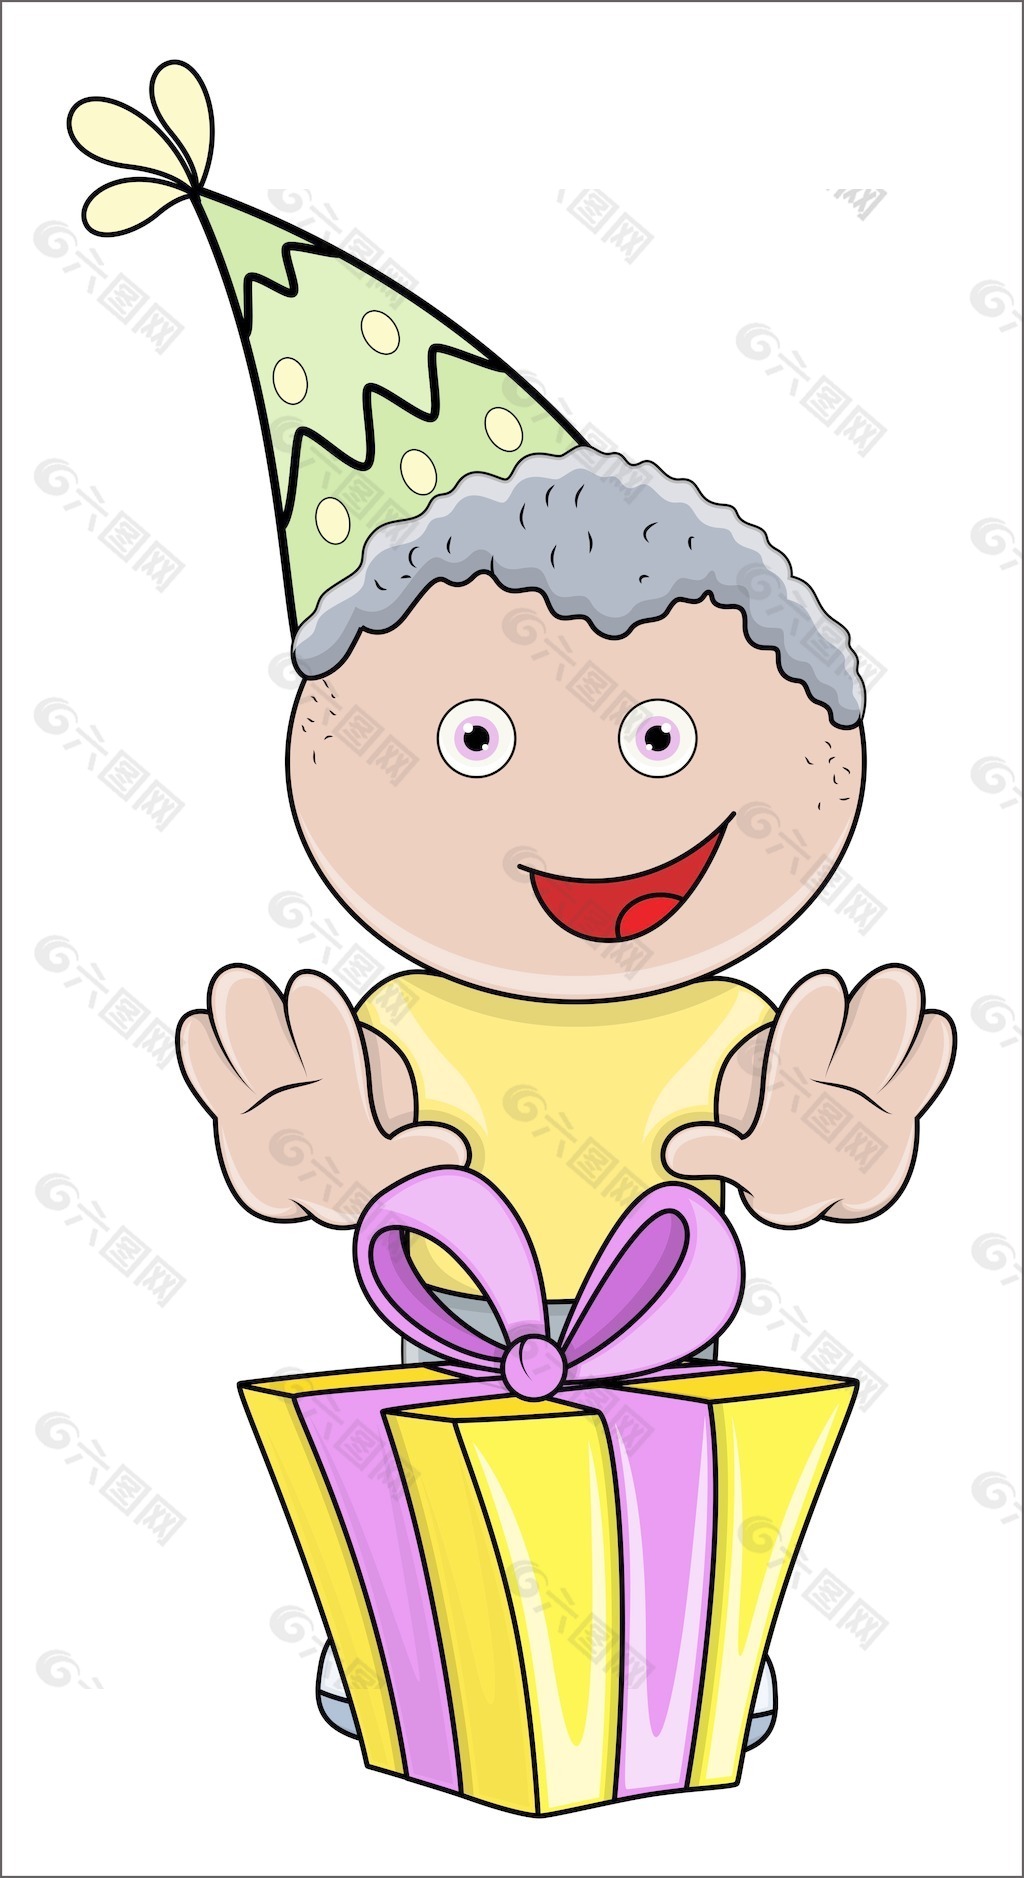 可爱的孩子过生日的男孩与他的礼物盒卡通插画矢量